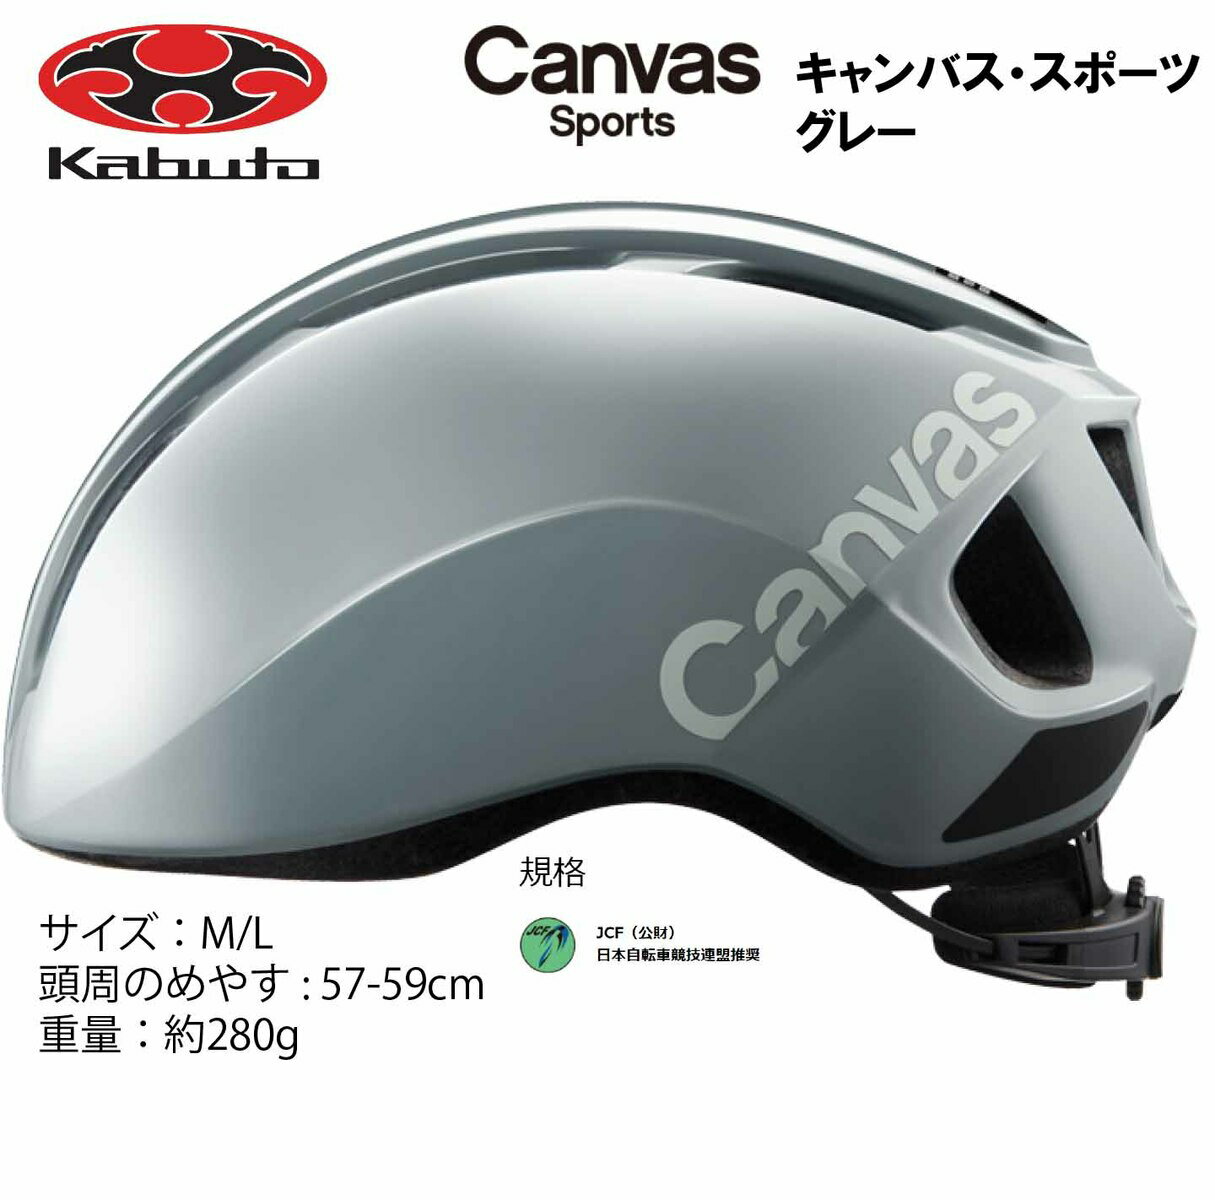 オージーケー カブト OGK KABUTO Canvas Sports キャンバス スポーツ ヘルメット M/L 57〜59cm グレー